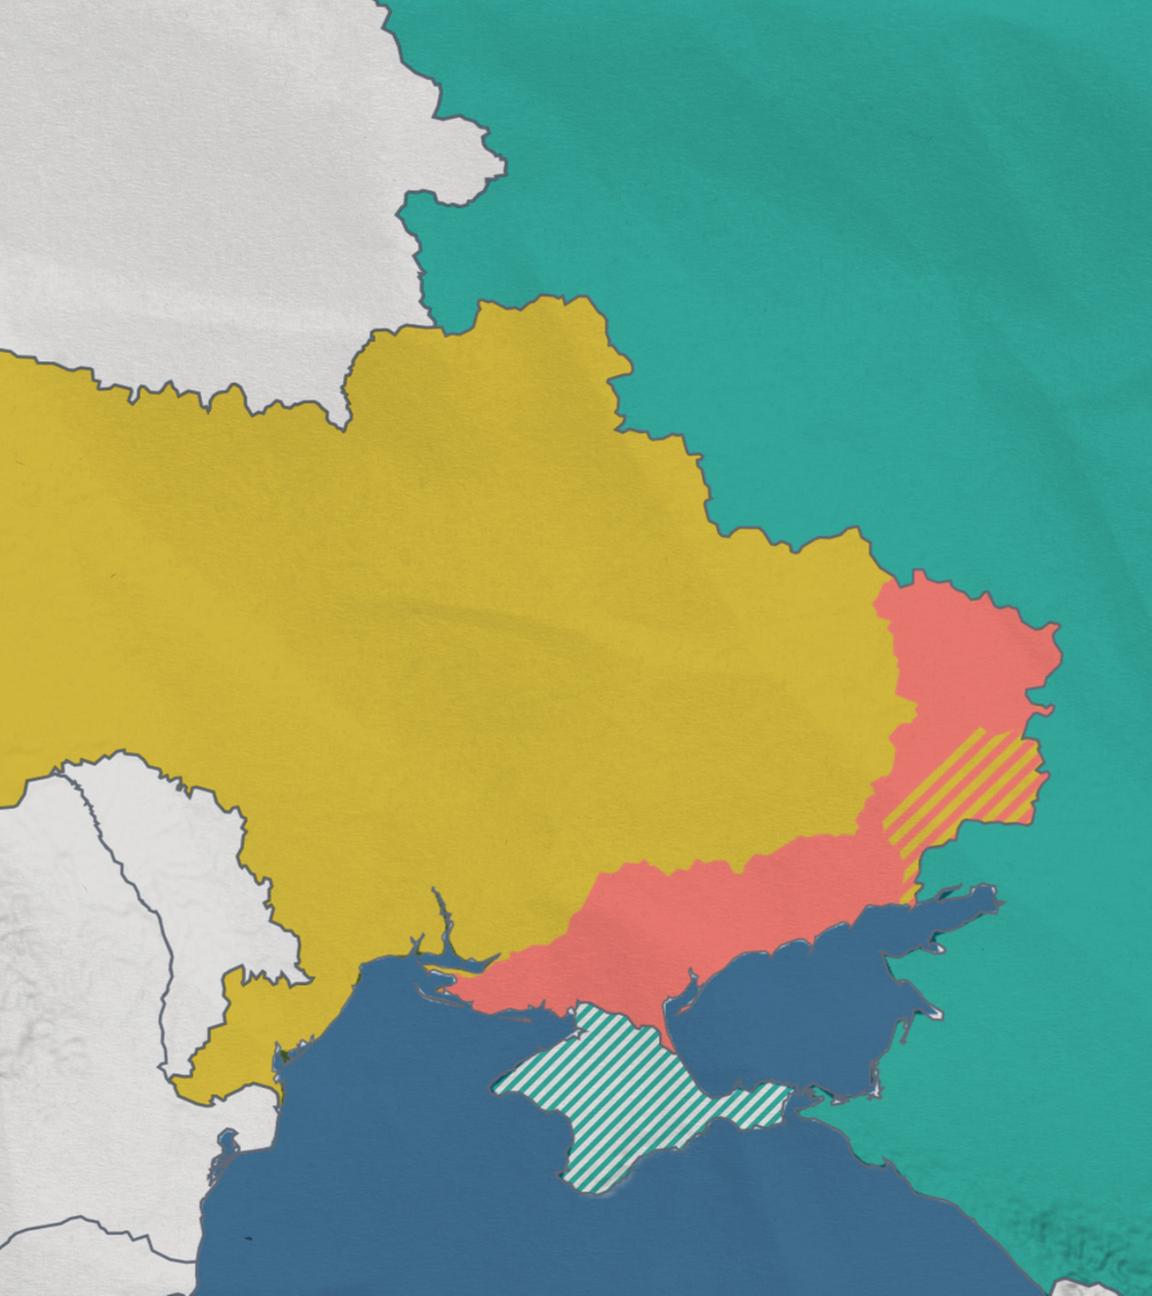 Die Karte der Ukraine zeigt, welche Gebiete im Osten des Landes von russischen Truppen besetzt sind. Zudem sind die Separatistengebiete und die annektierte Krim hervorgehoben. 